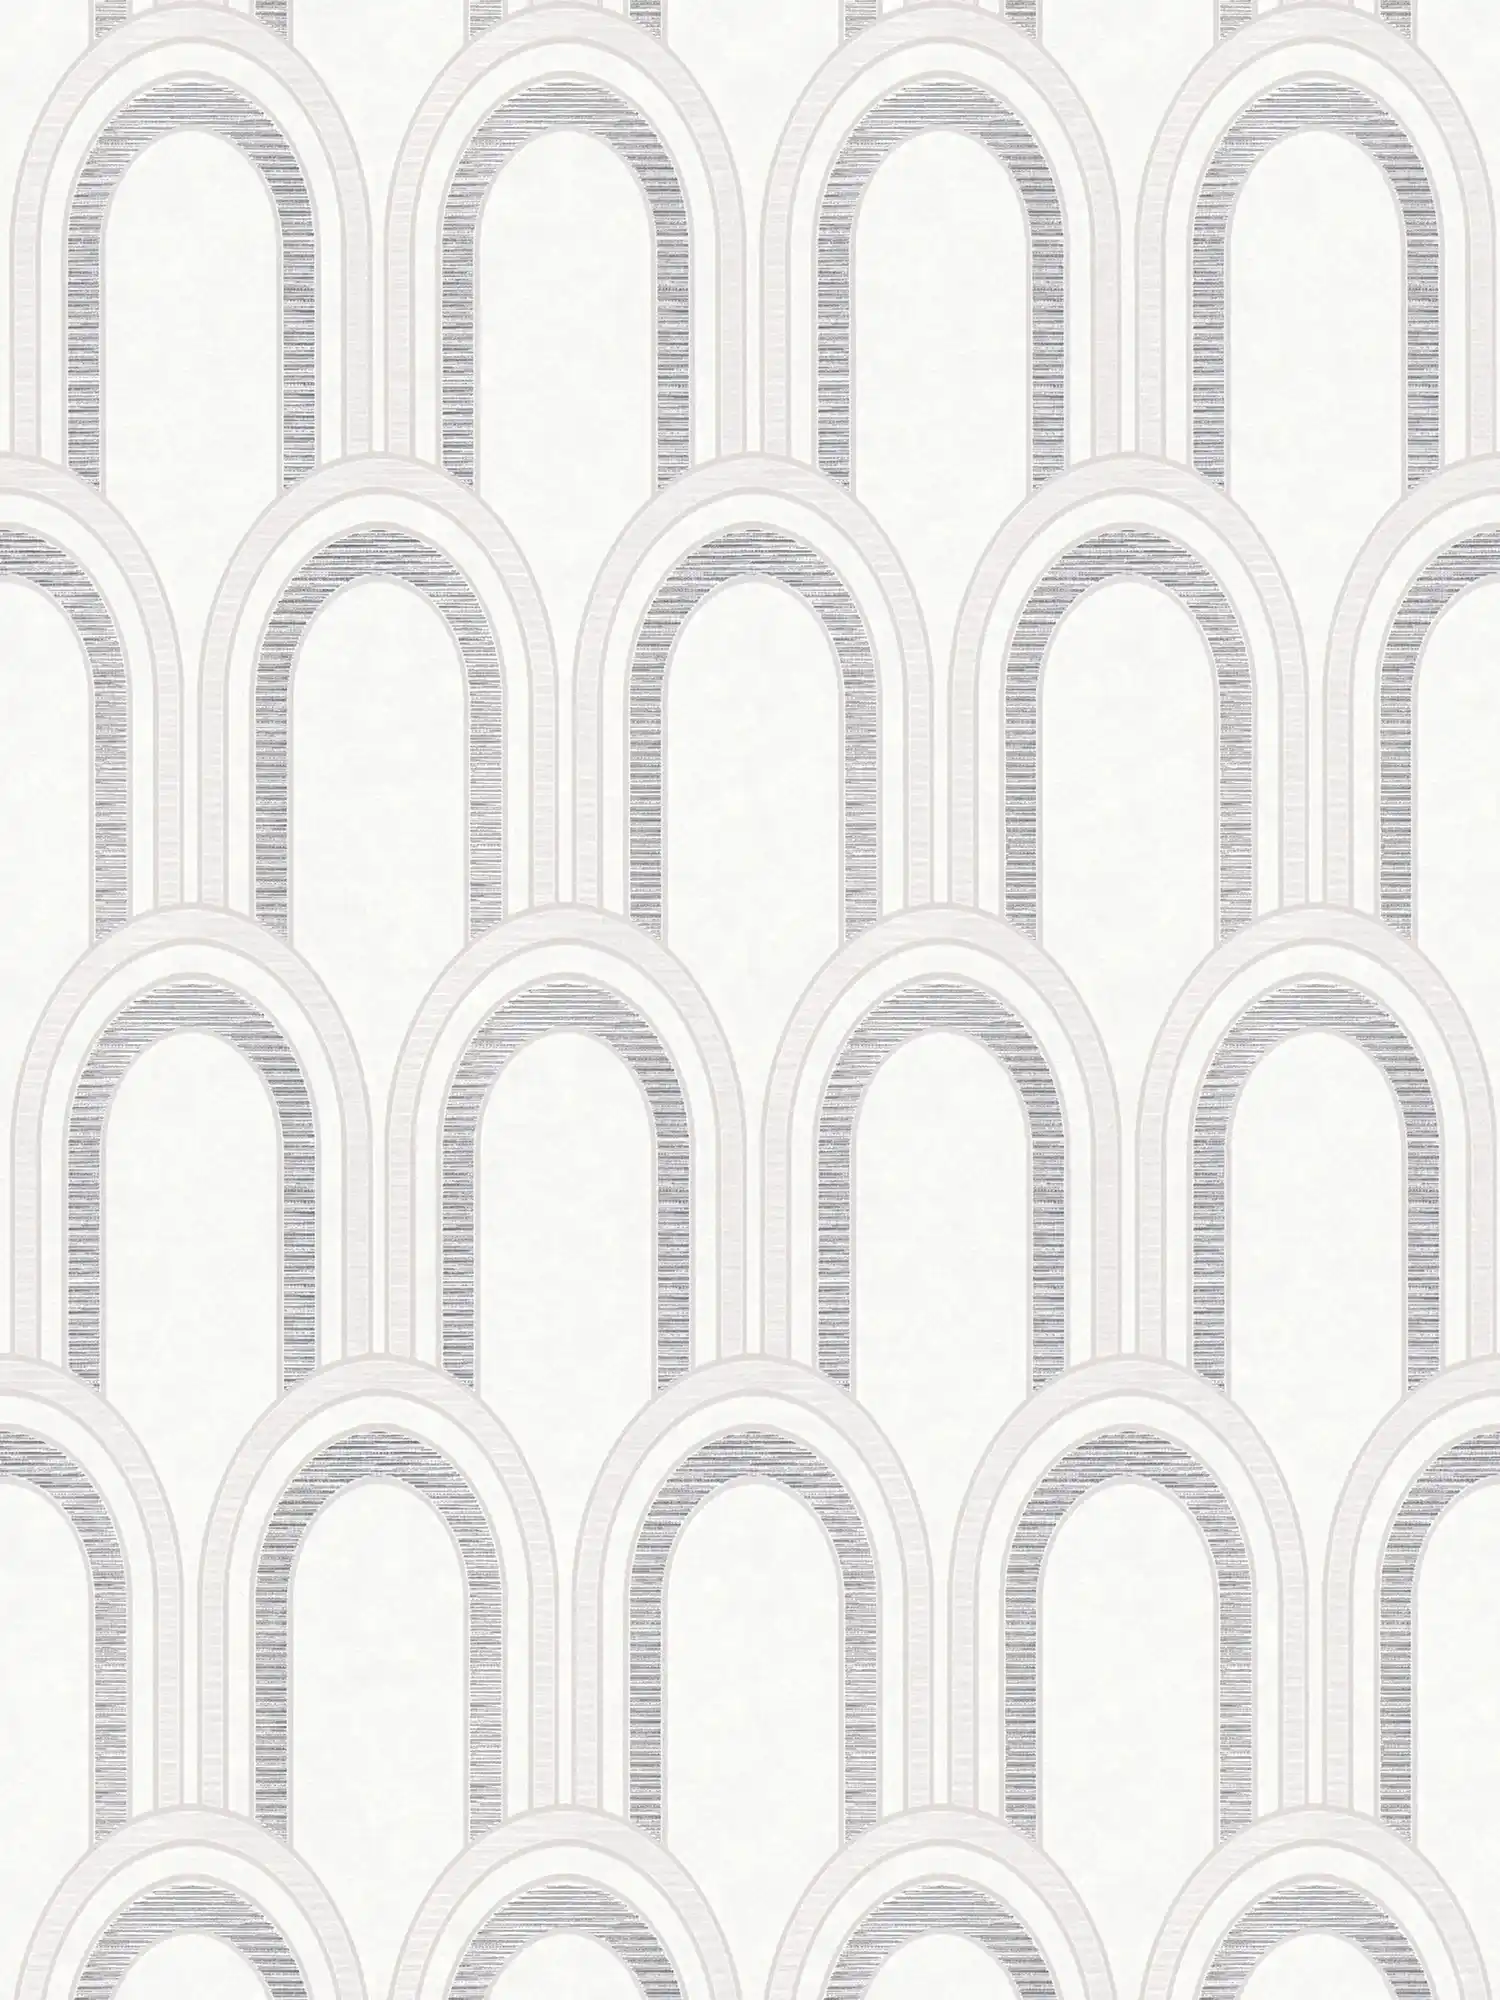         Papier peint intissé aspect arc avec effet brillant - blanc, gris, argenté
    